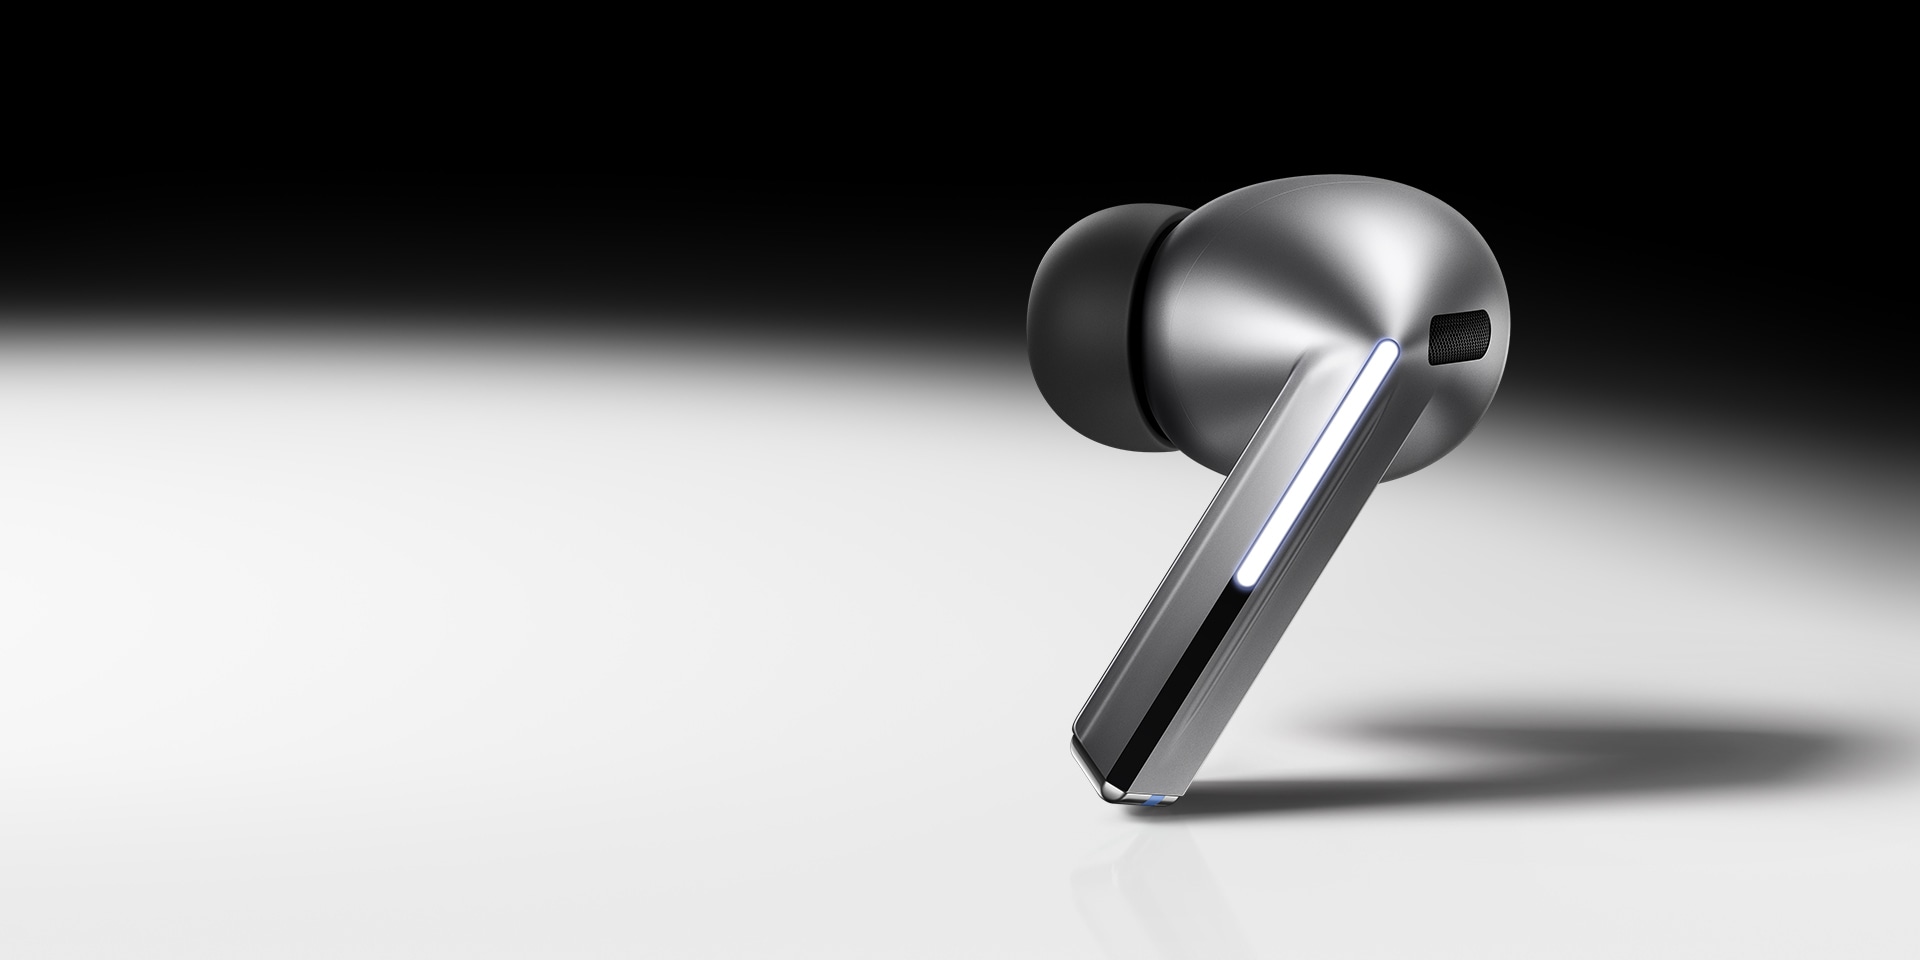 Ein einzelner, silberfarbener Galaxy Buds3 Pro-Ohrhörer auf einem Hintergrund mit schwarzem und weißem Farbverlauf.